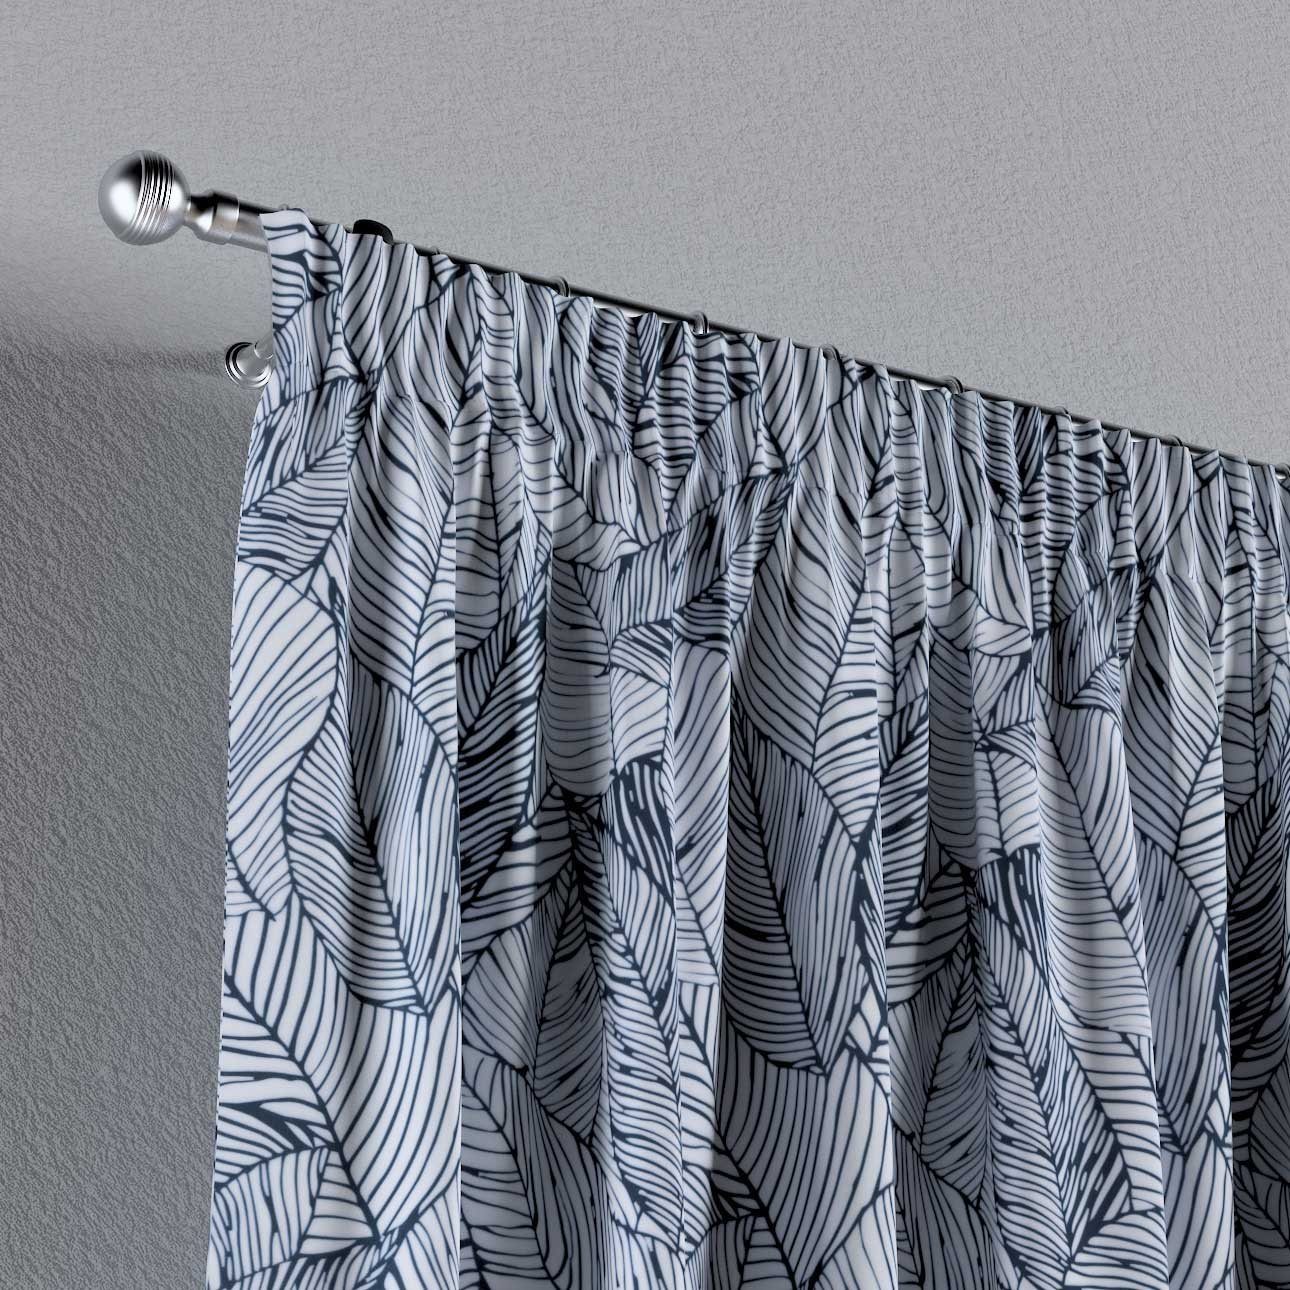 Dekoria Vorhang Kräuselband 130x100 cm, Vorhang dunkelblau-weiß Velvet, mit